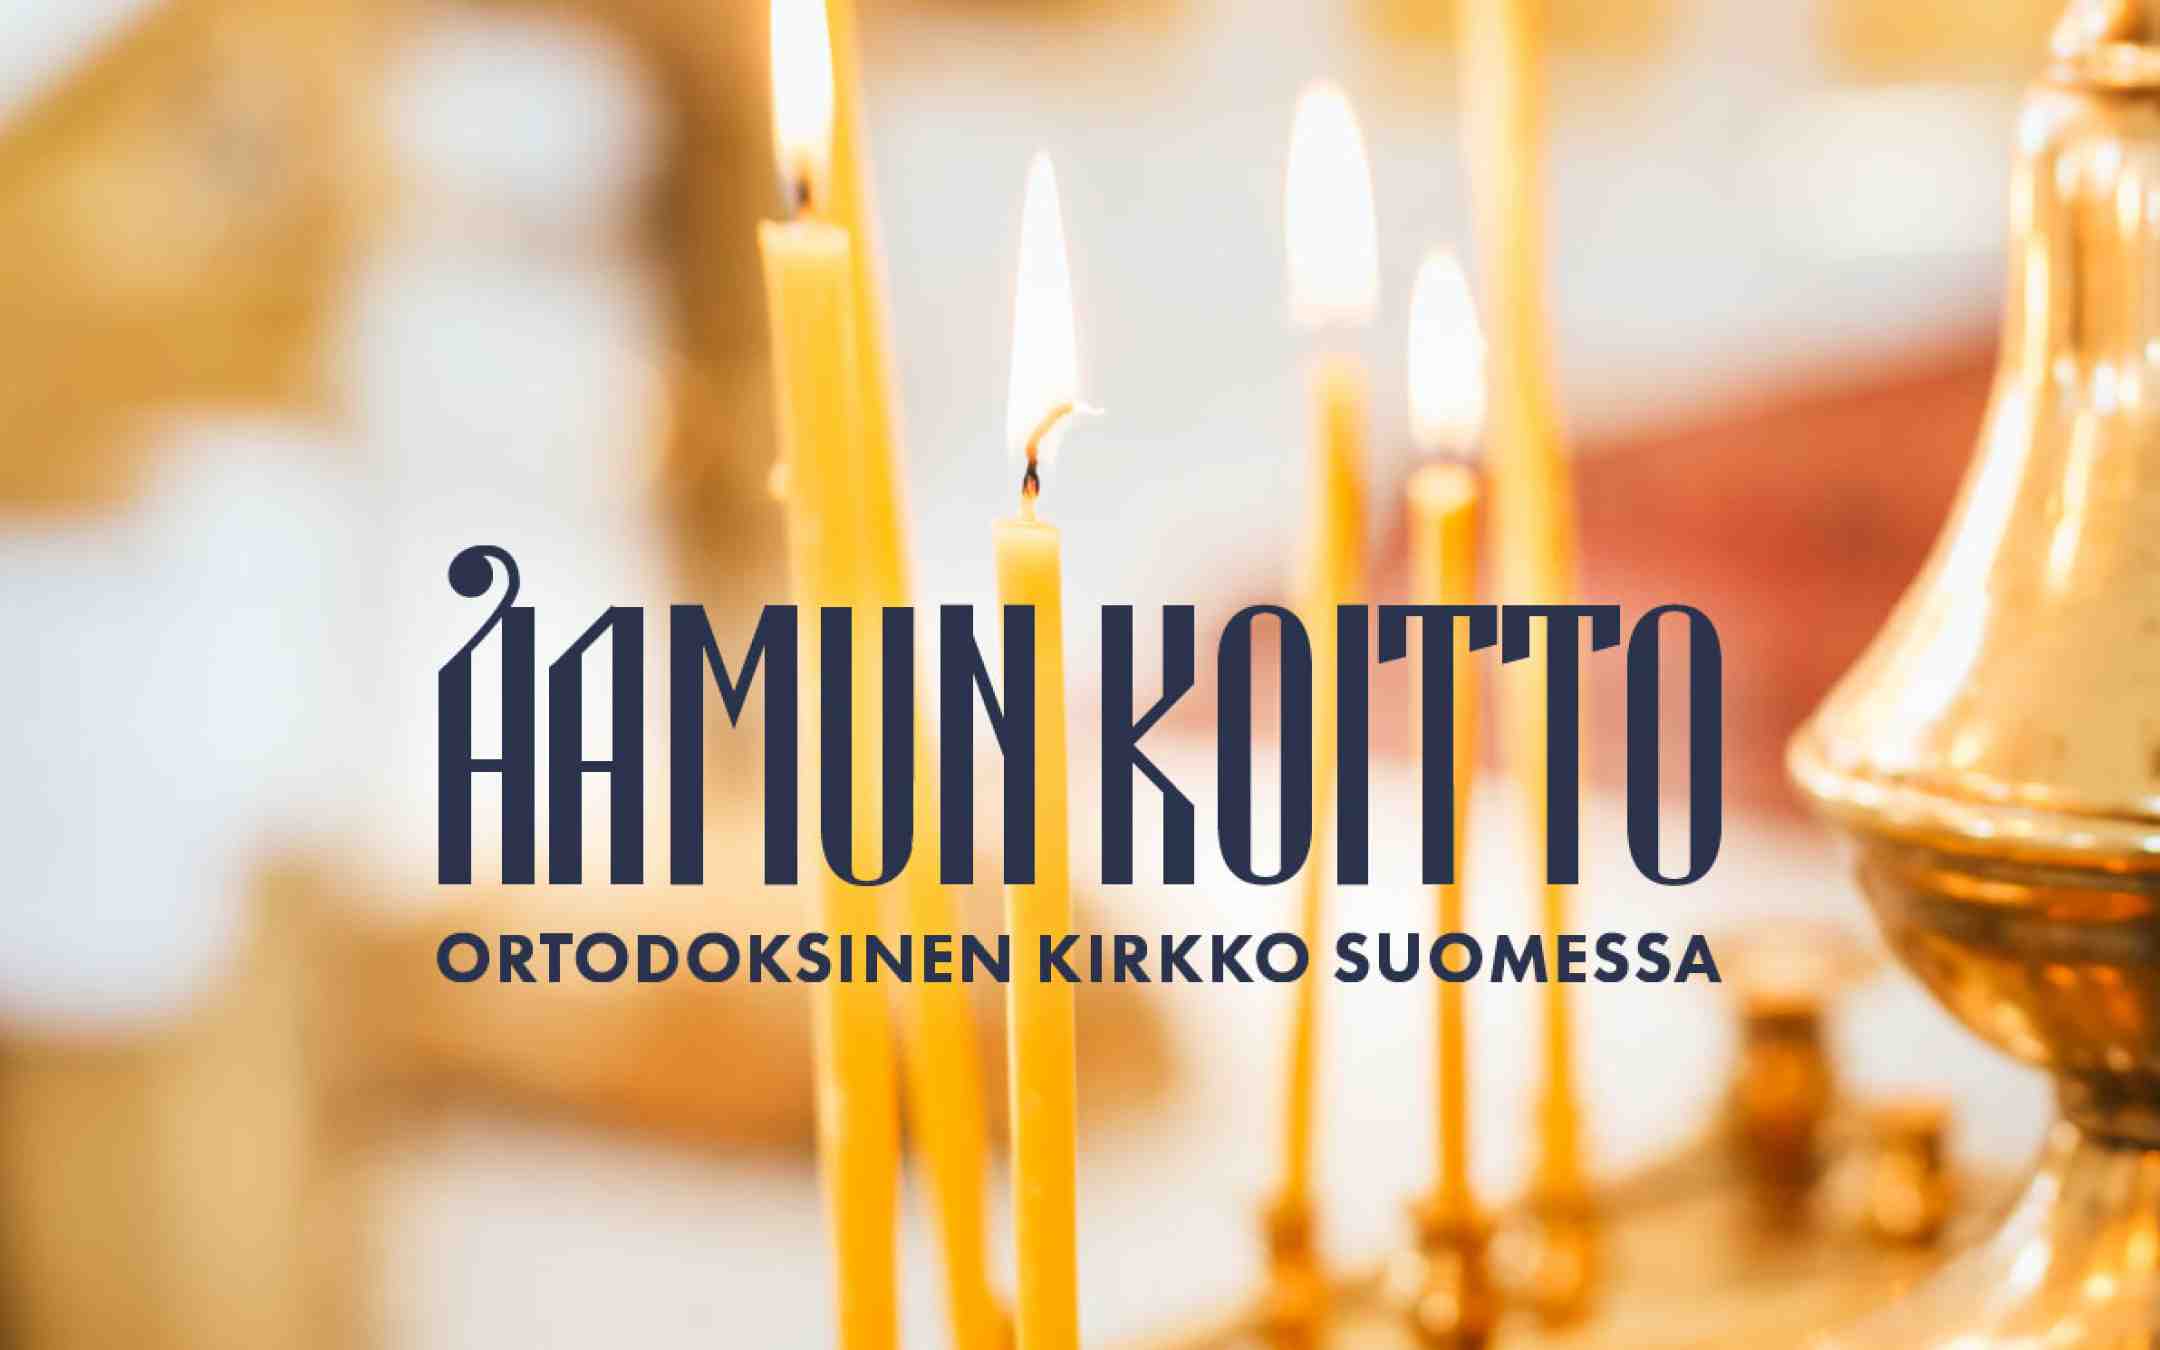 Suomen ortodoksisen kirkon julkaiseman Aamun Koitto -lehden nimiö